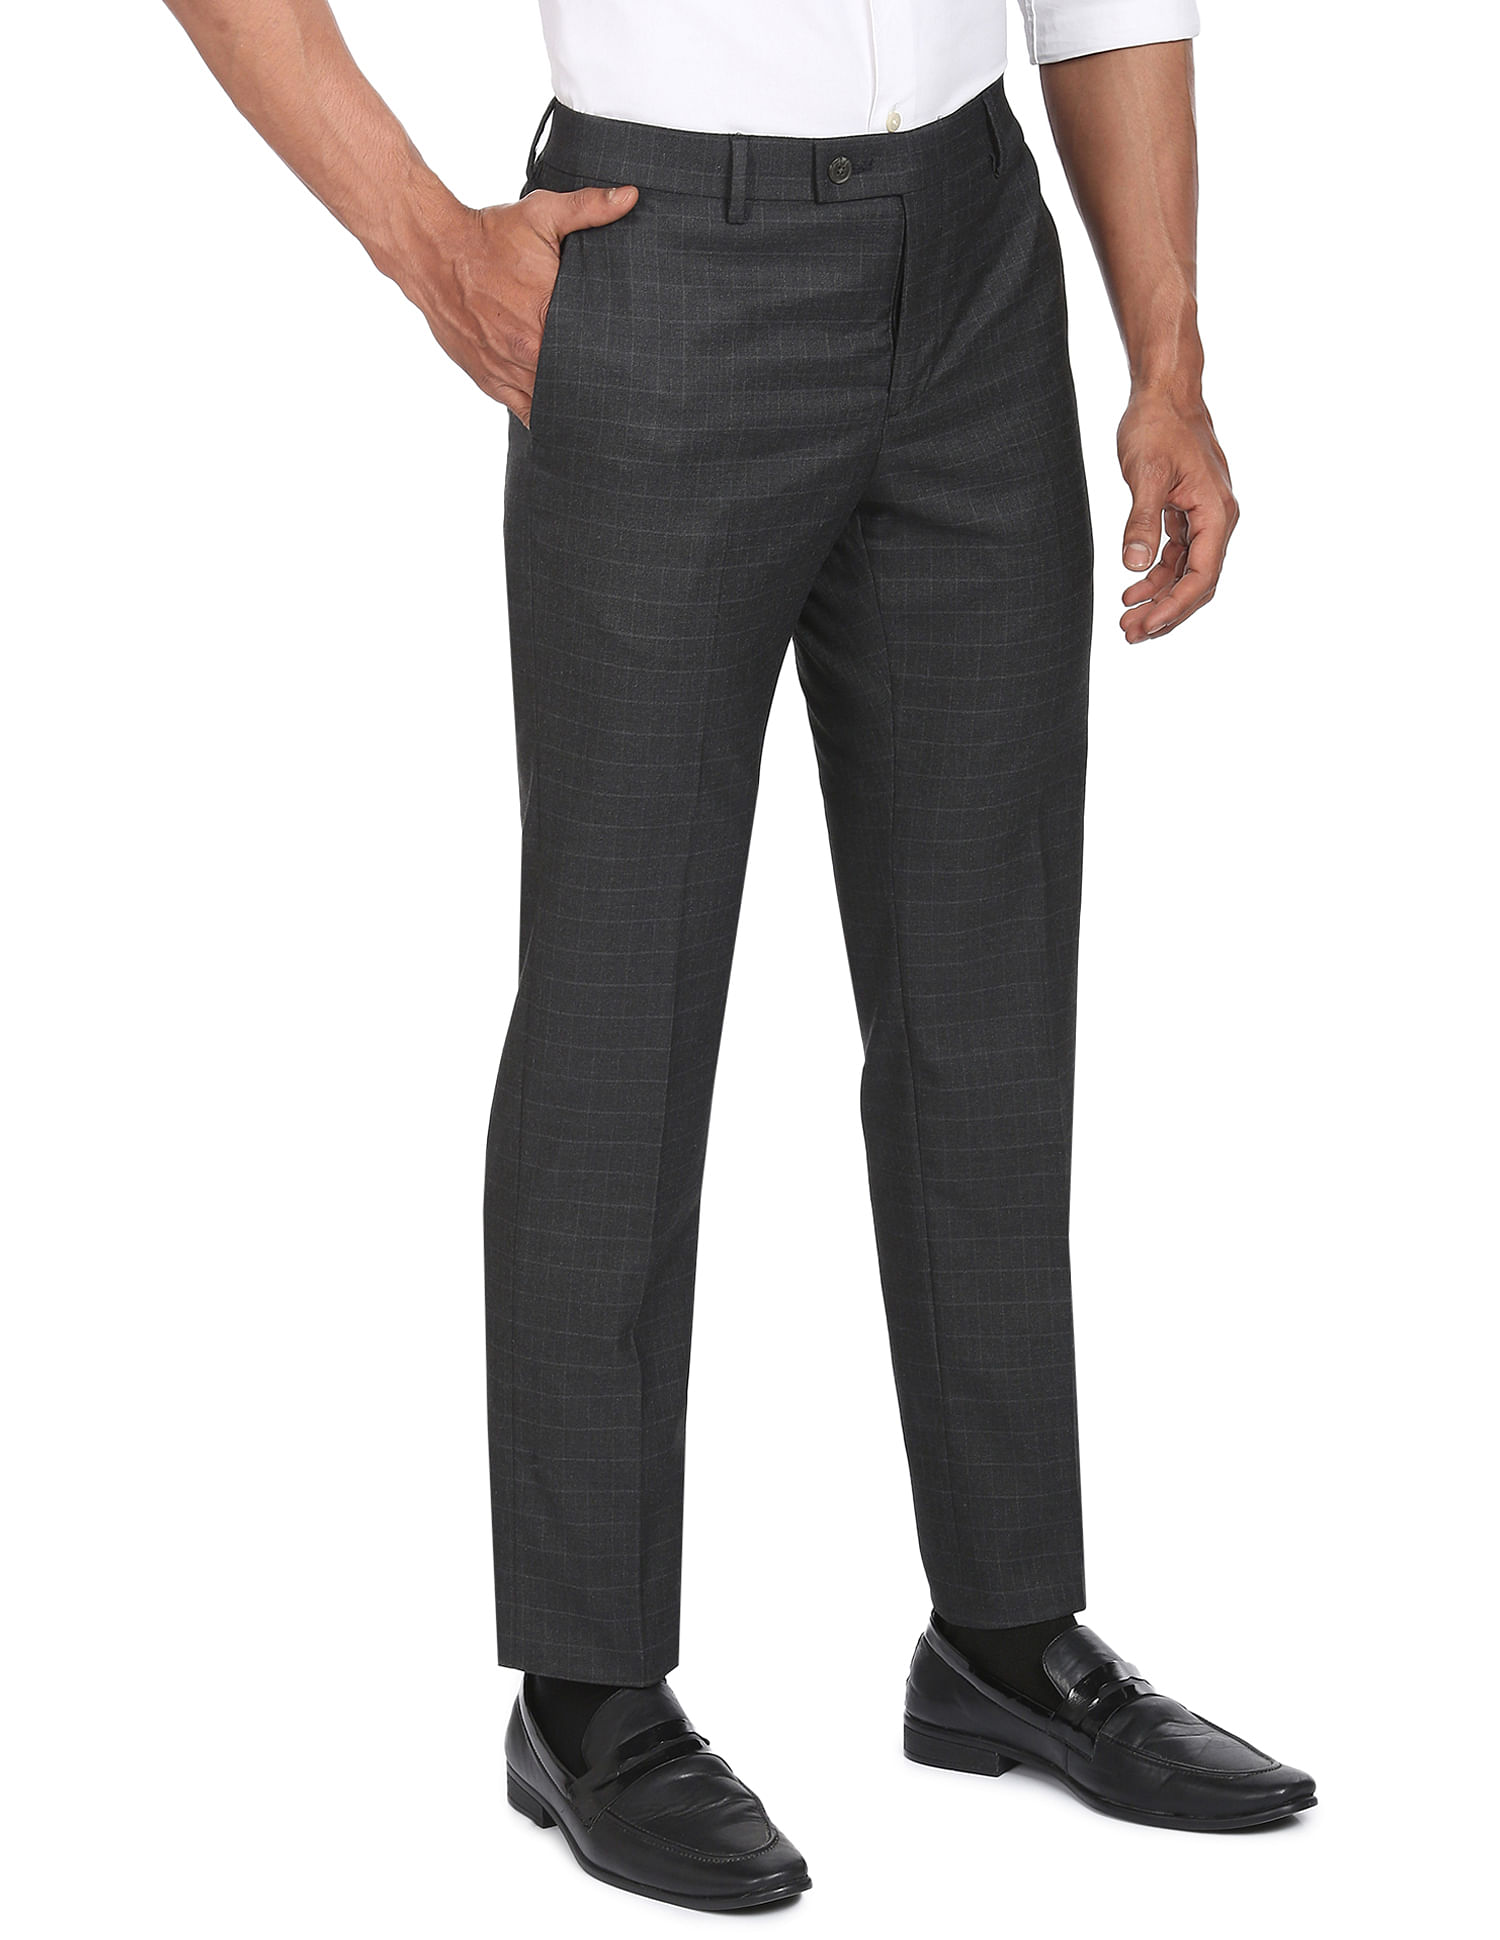 Buy Steel Blue Trousers & Pants for Men by ARROW Online | Ajio.com